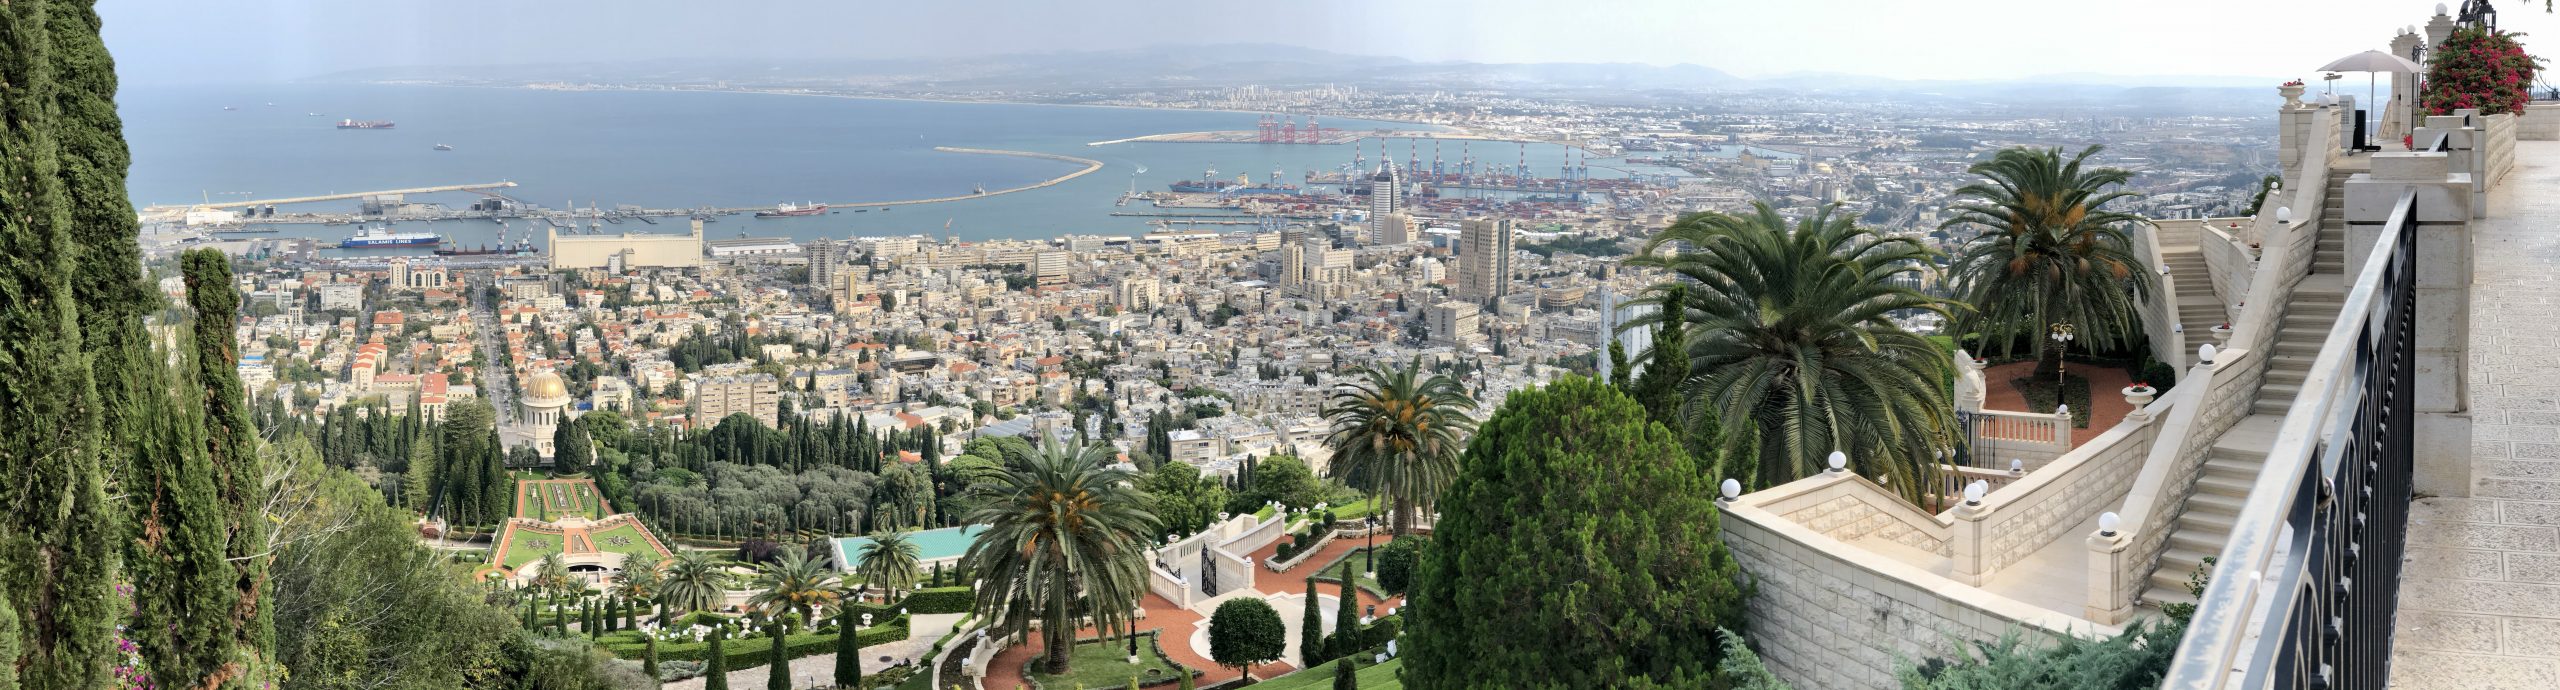 Haifa Bay Panorama